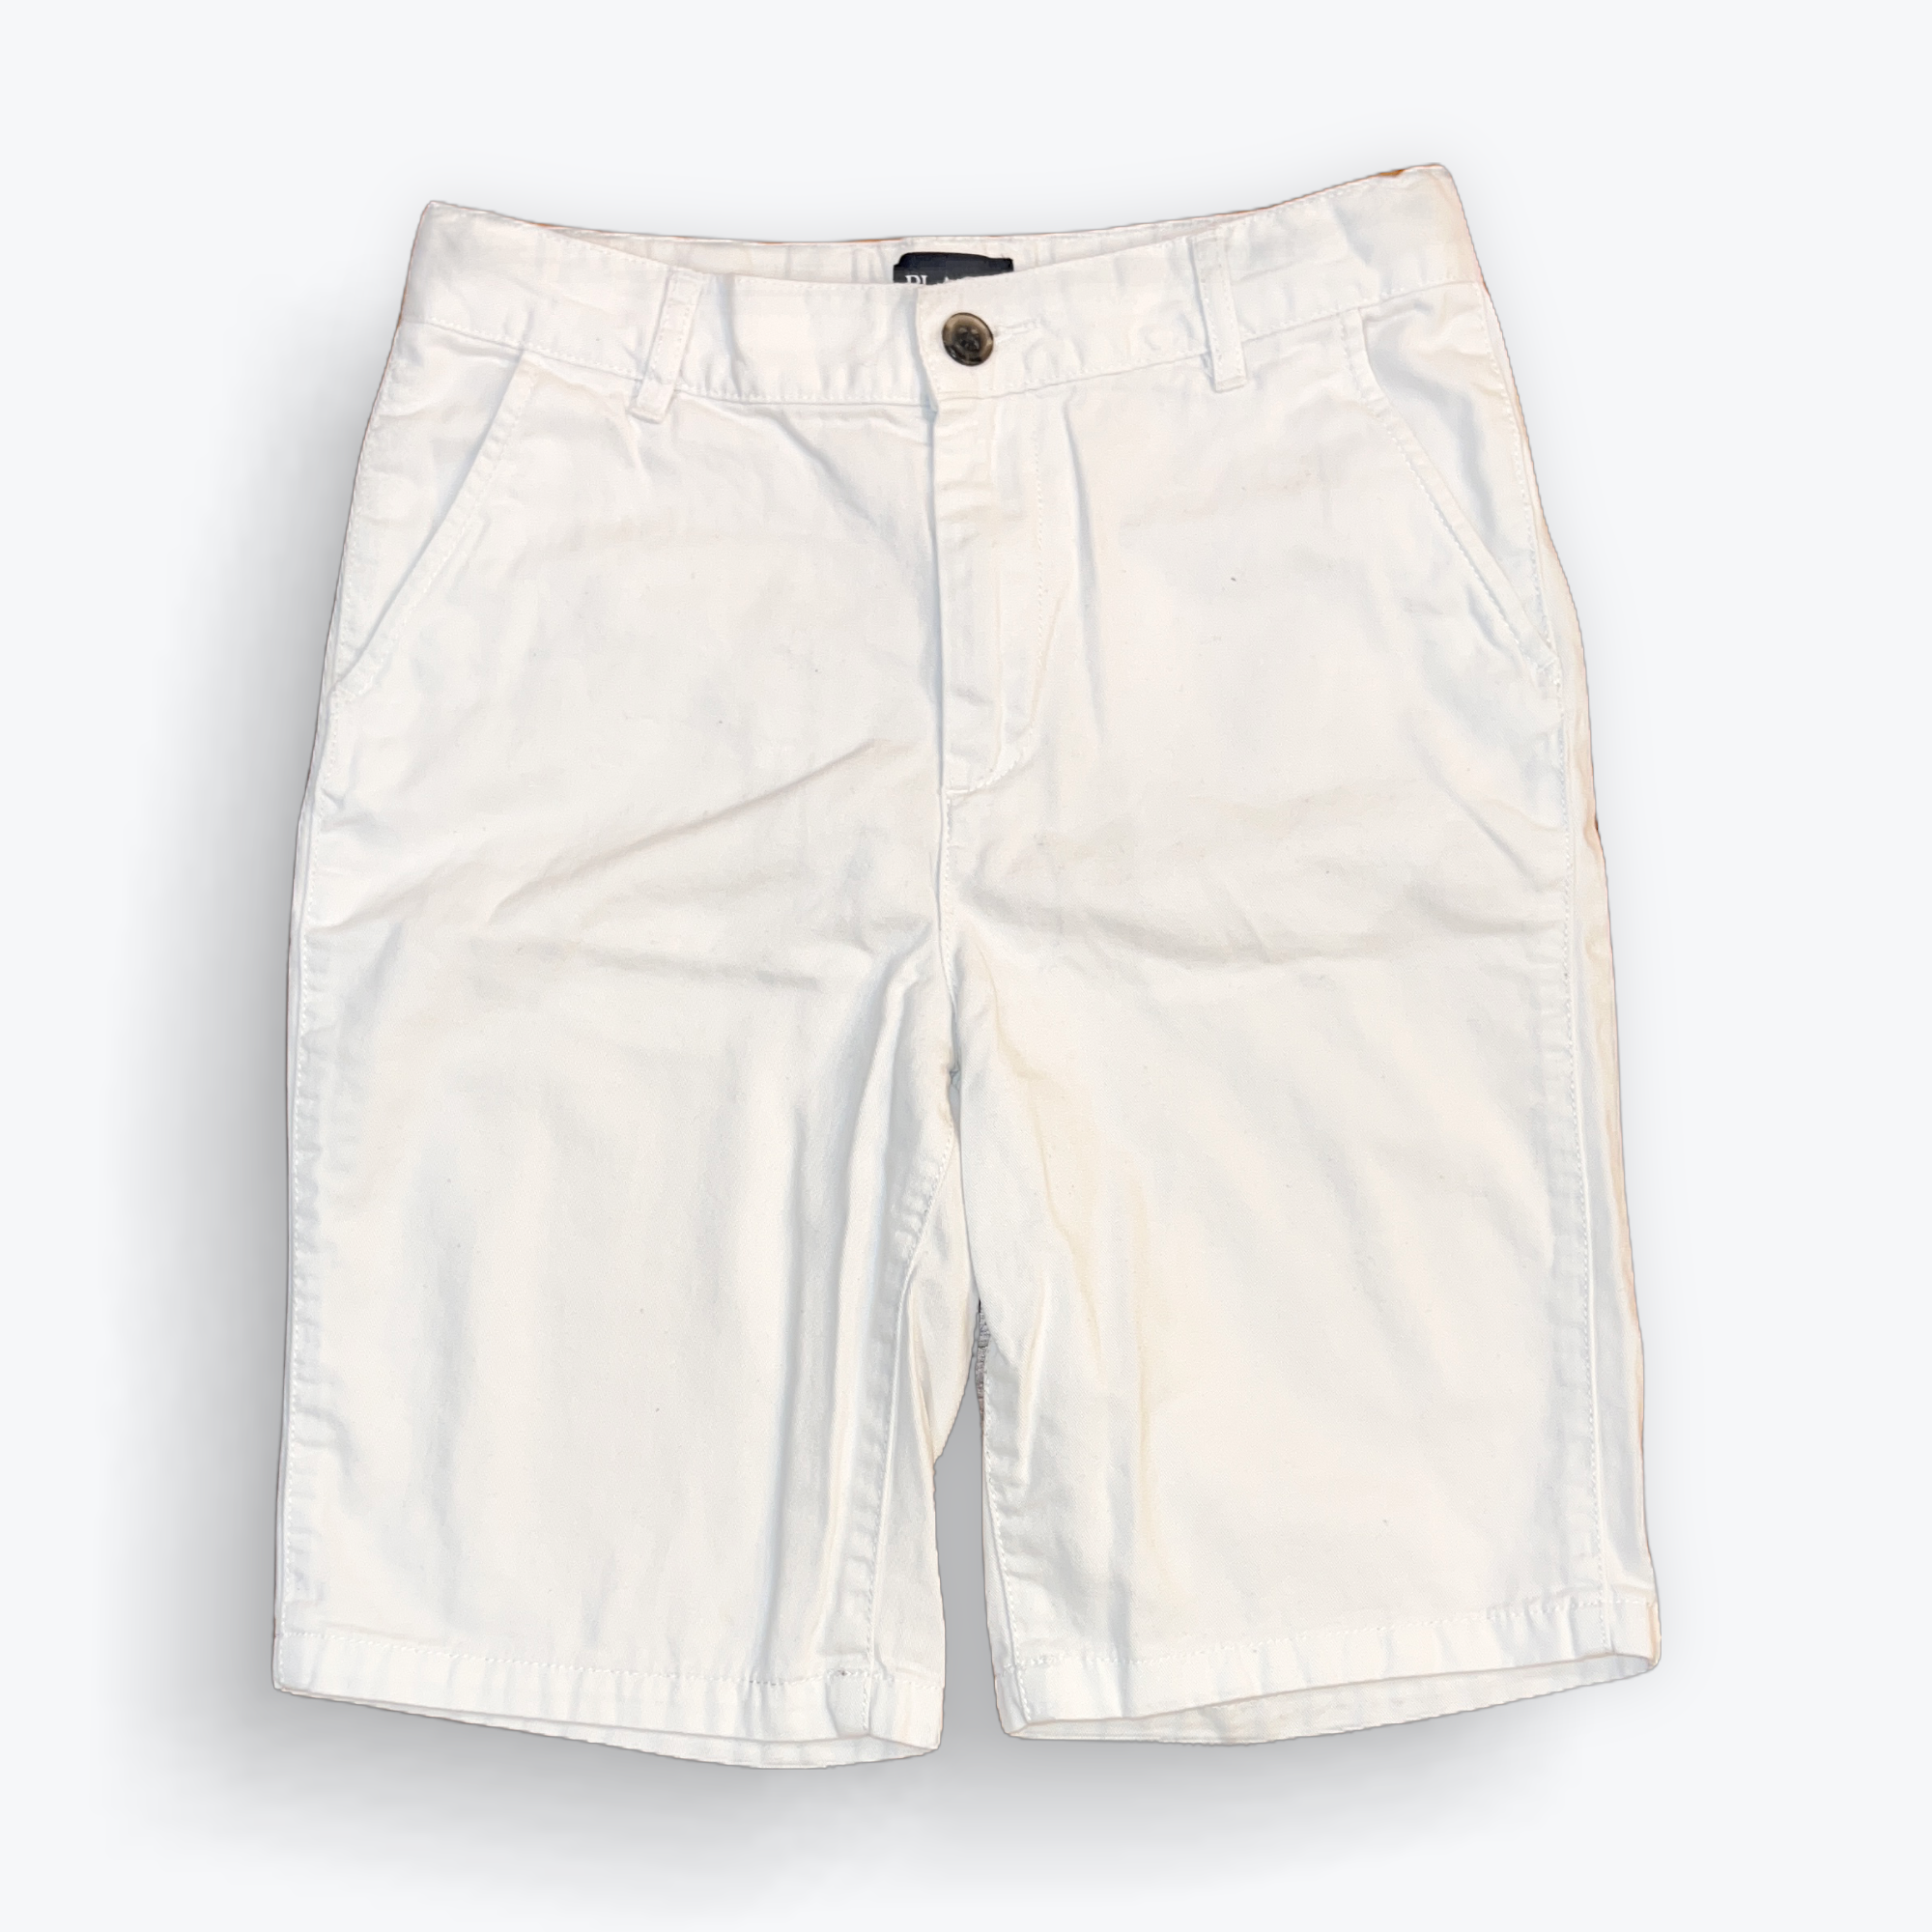 Brushed Cotton Shorts - 12